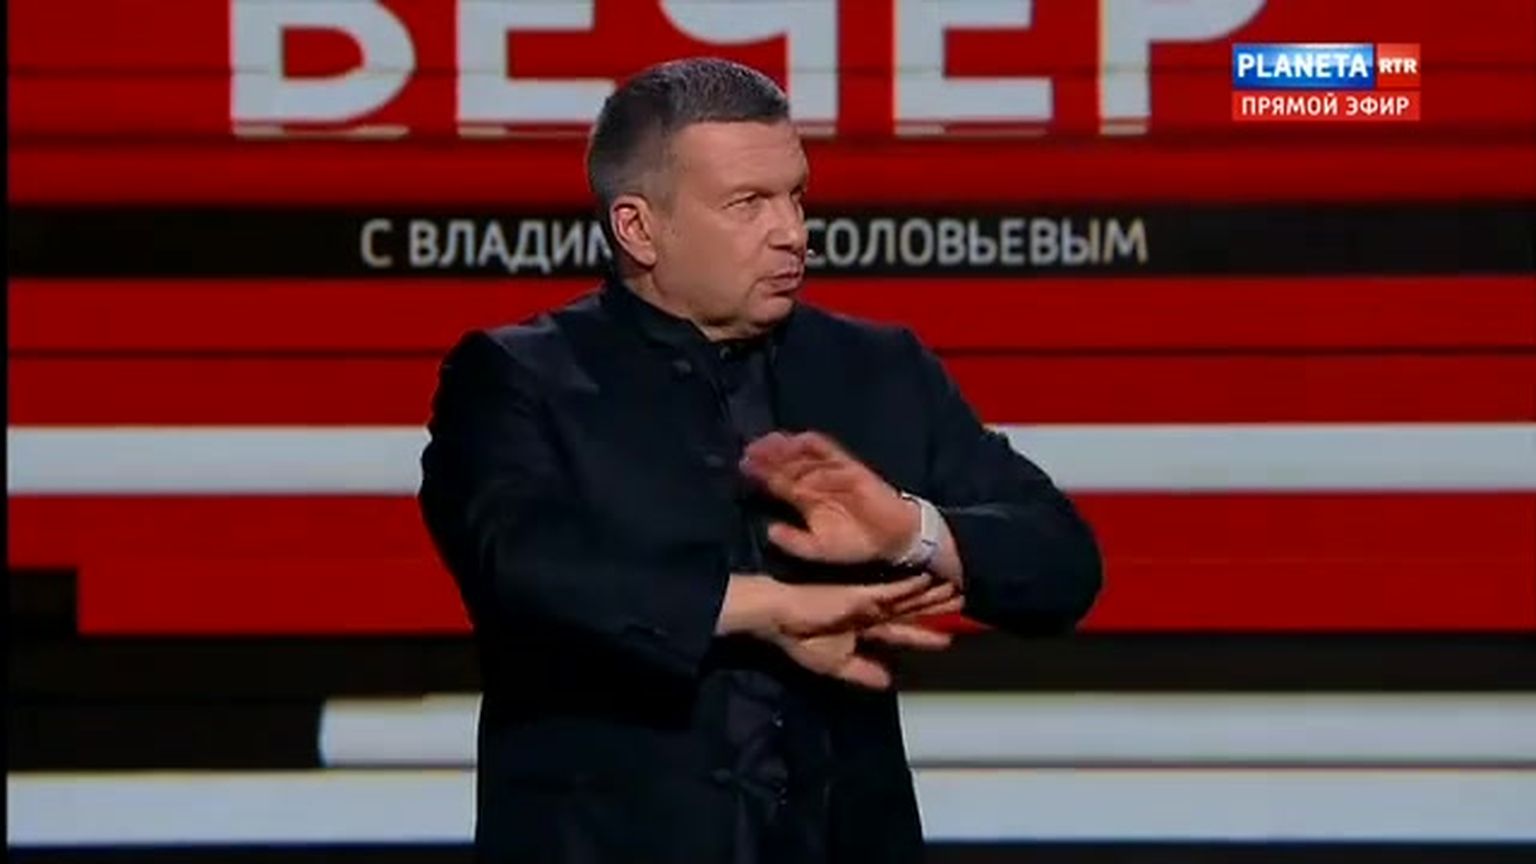 Владимир Соловьев, российский телеведущий